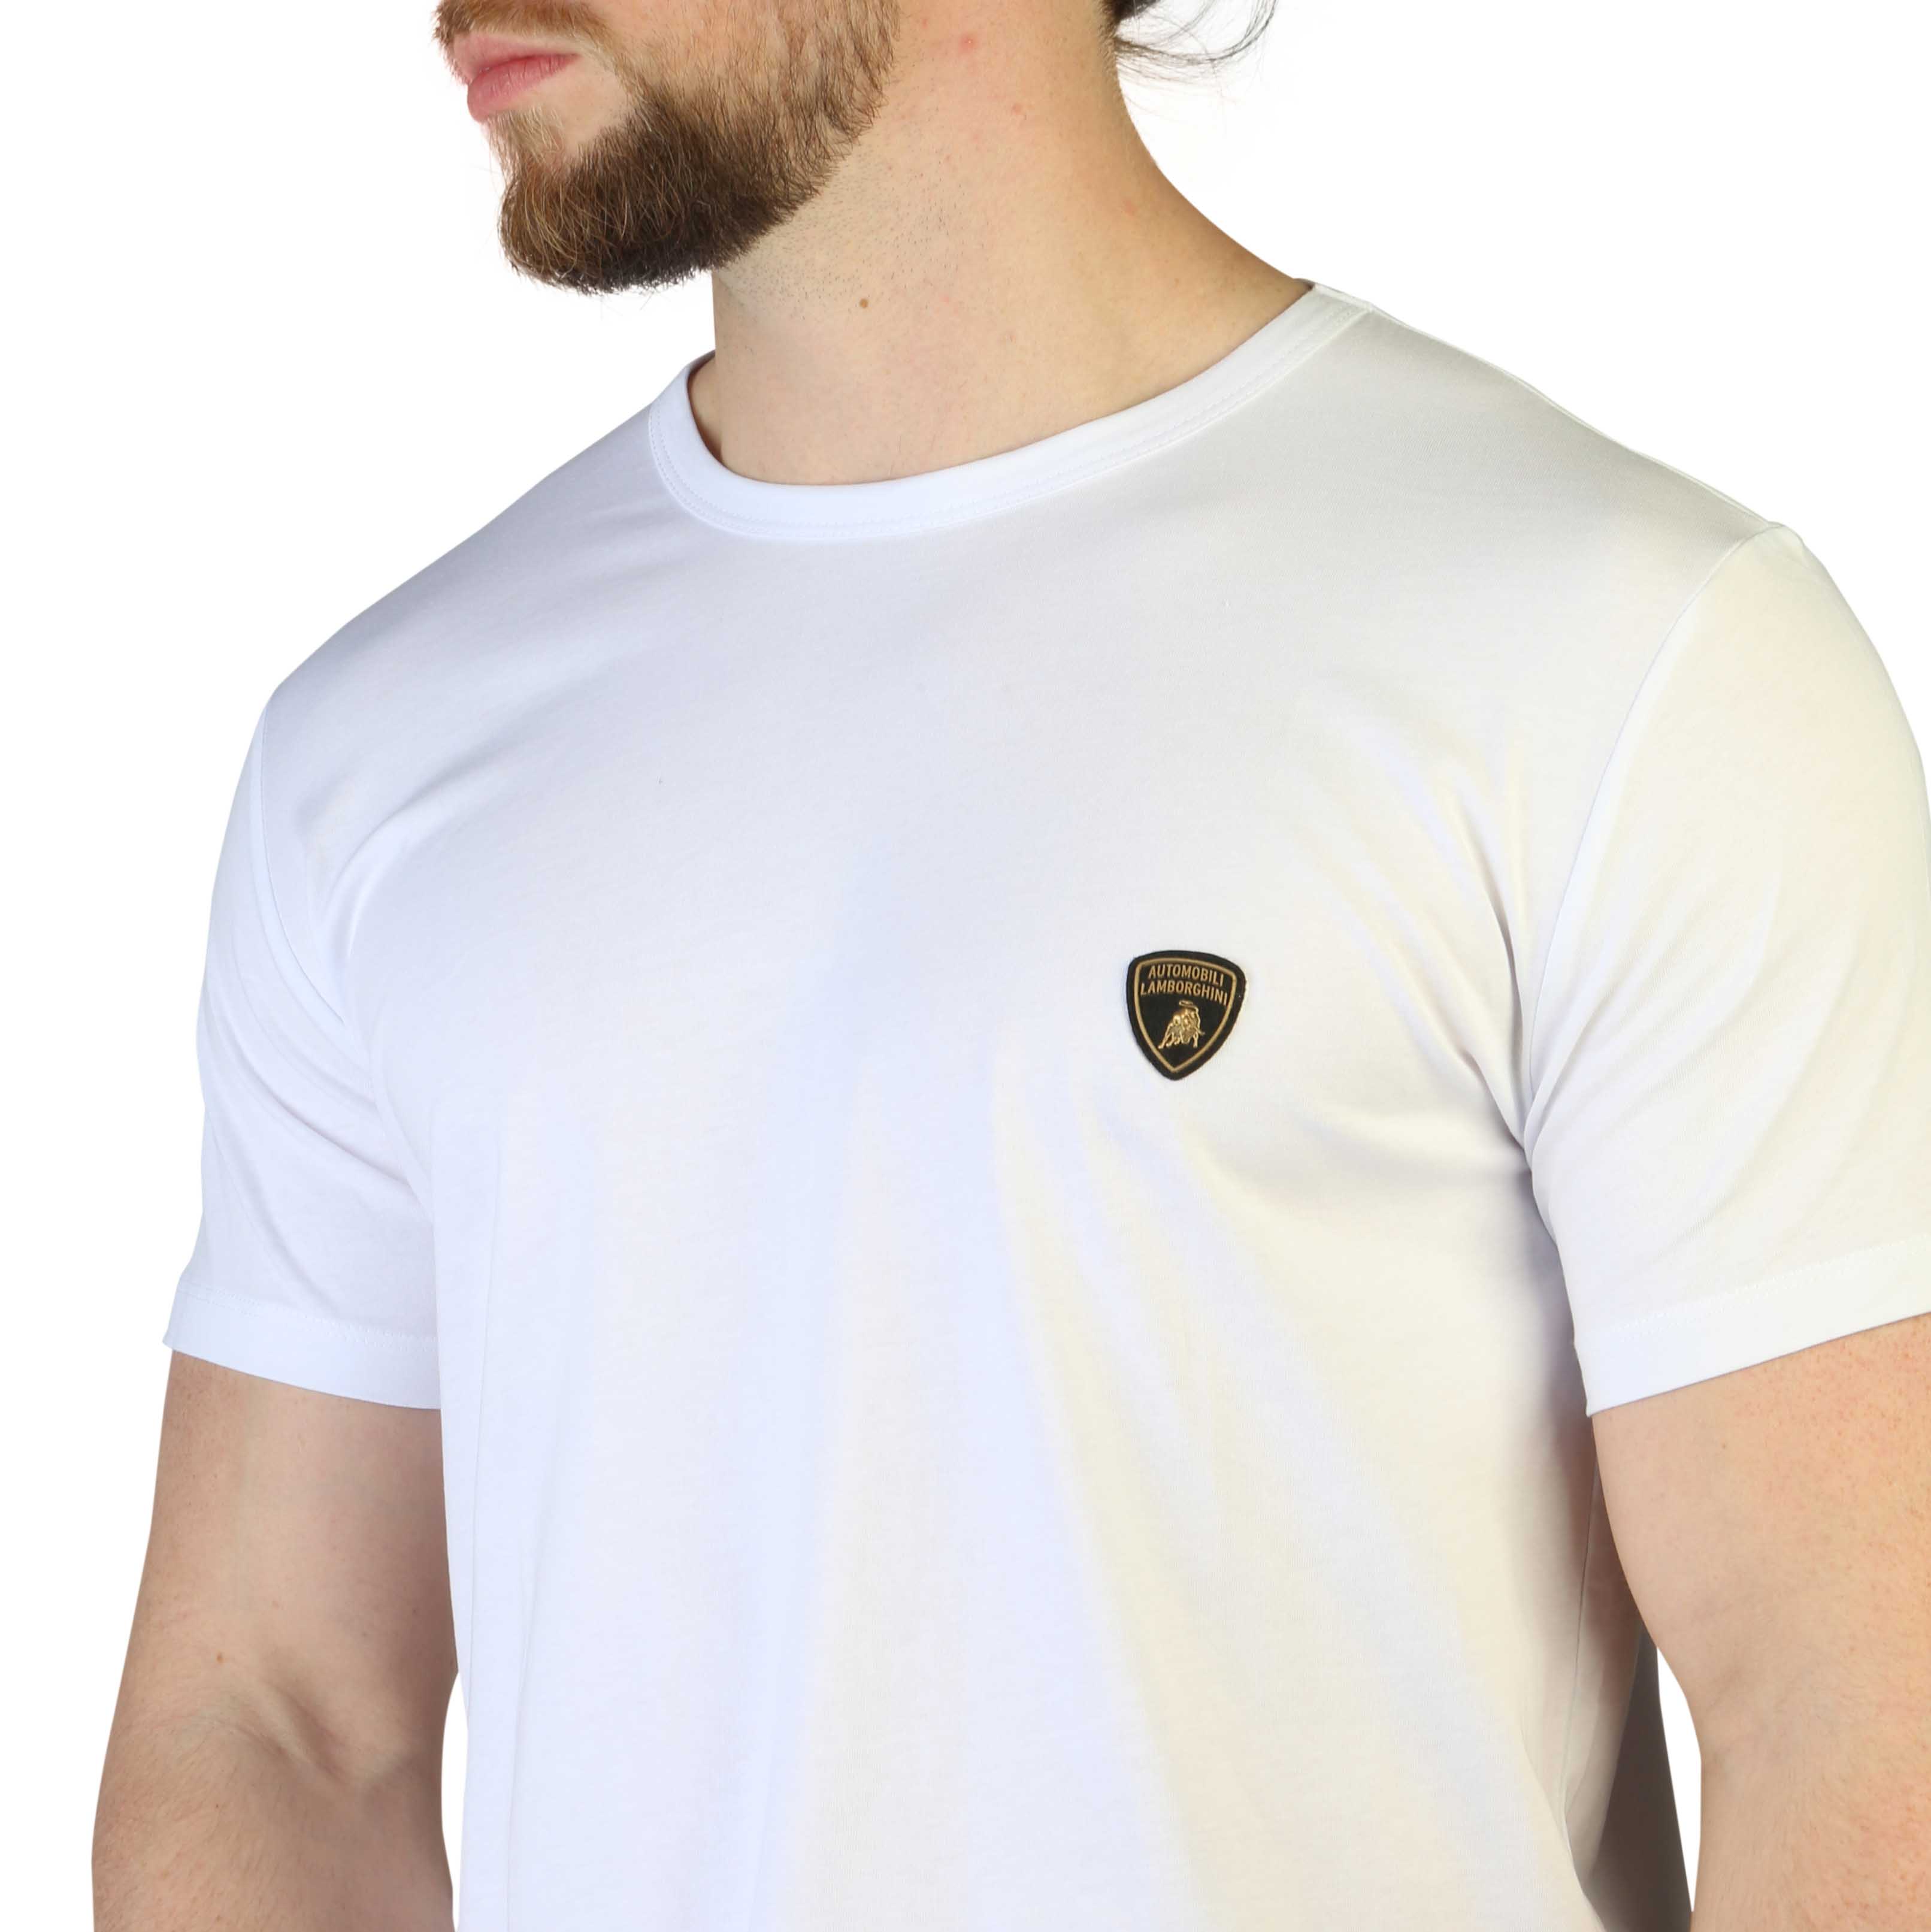 Lamborghini White T-shirts for Men - B3XVB7T1